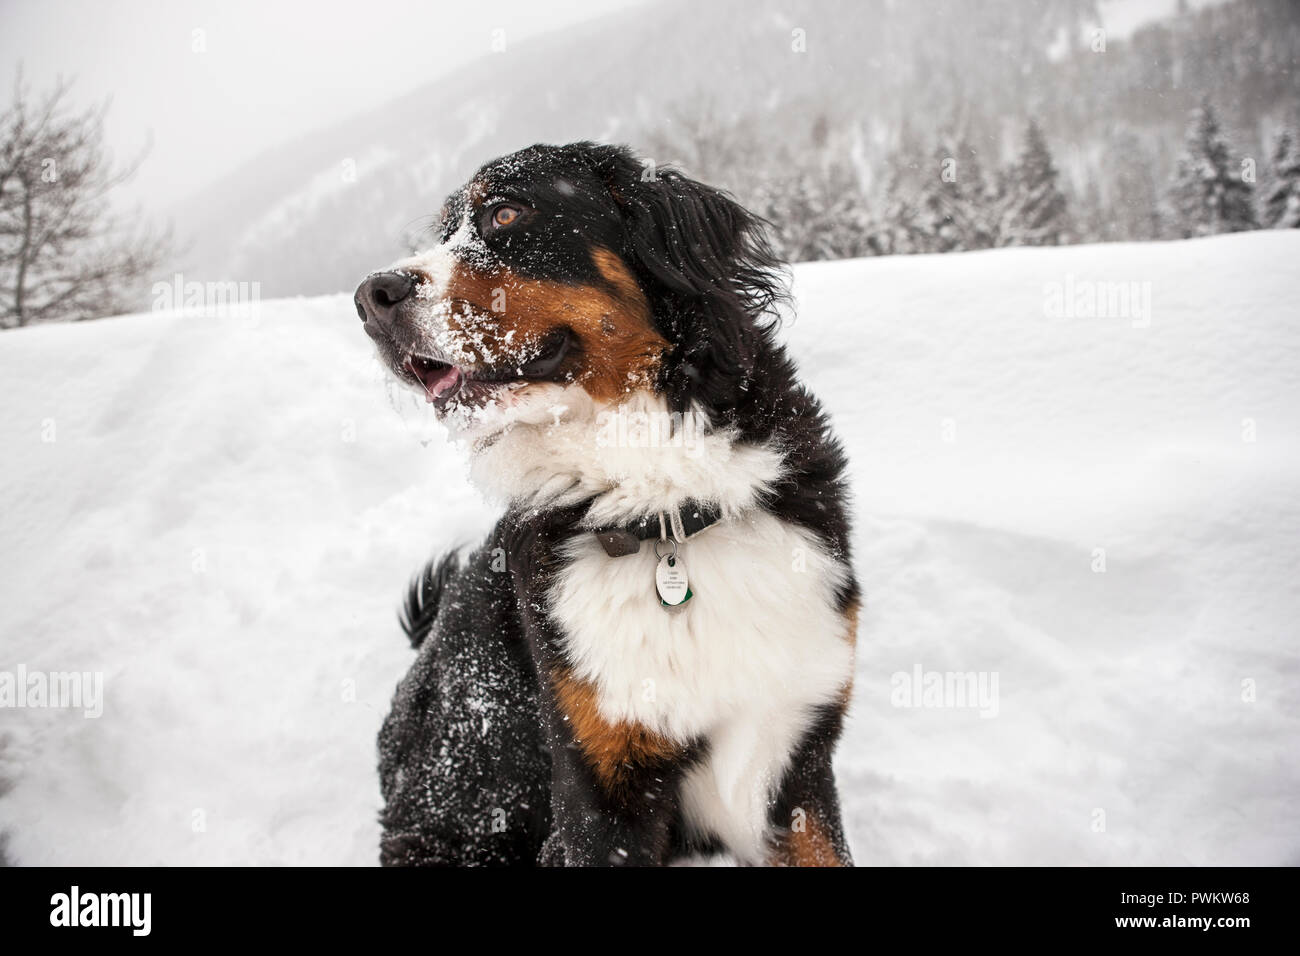 Cane coperte di neve mentre è seduto in un paesaggio invernale. Foto Stock